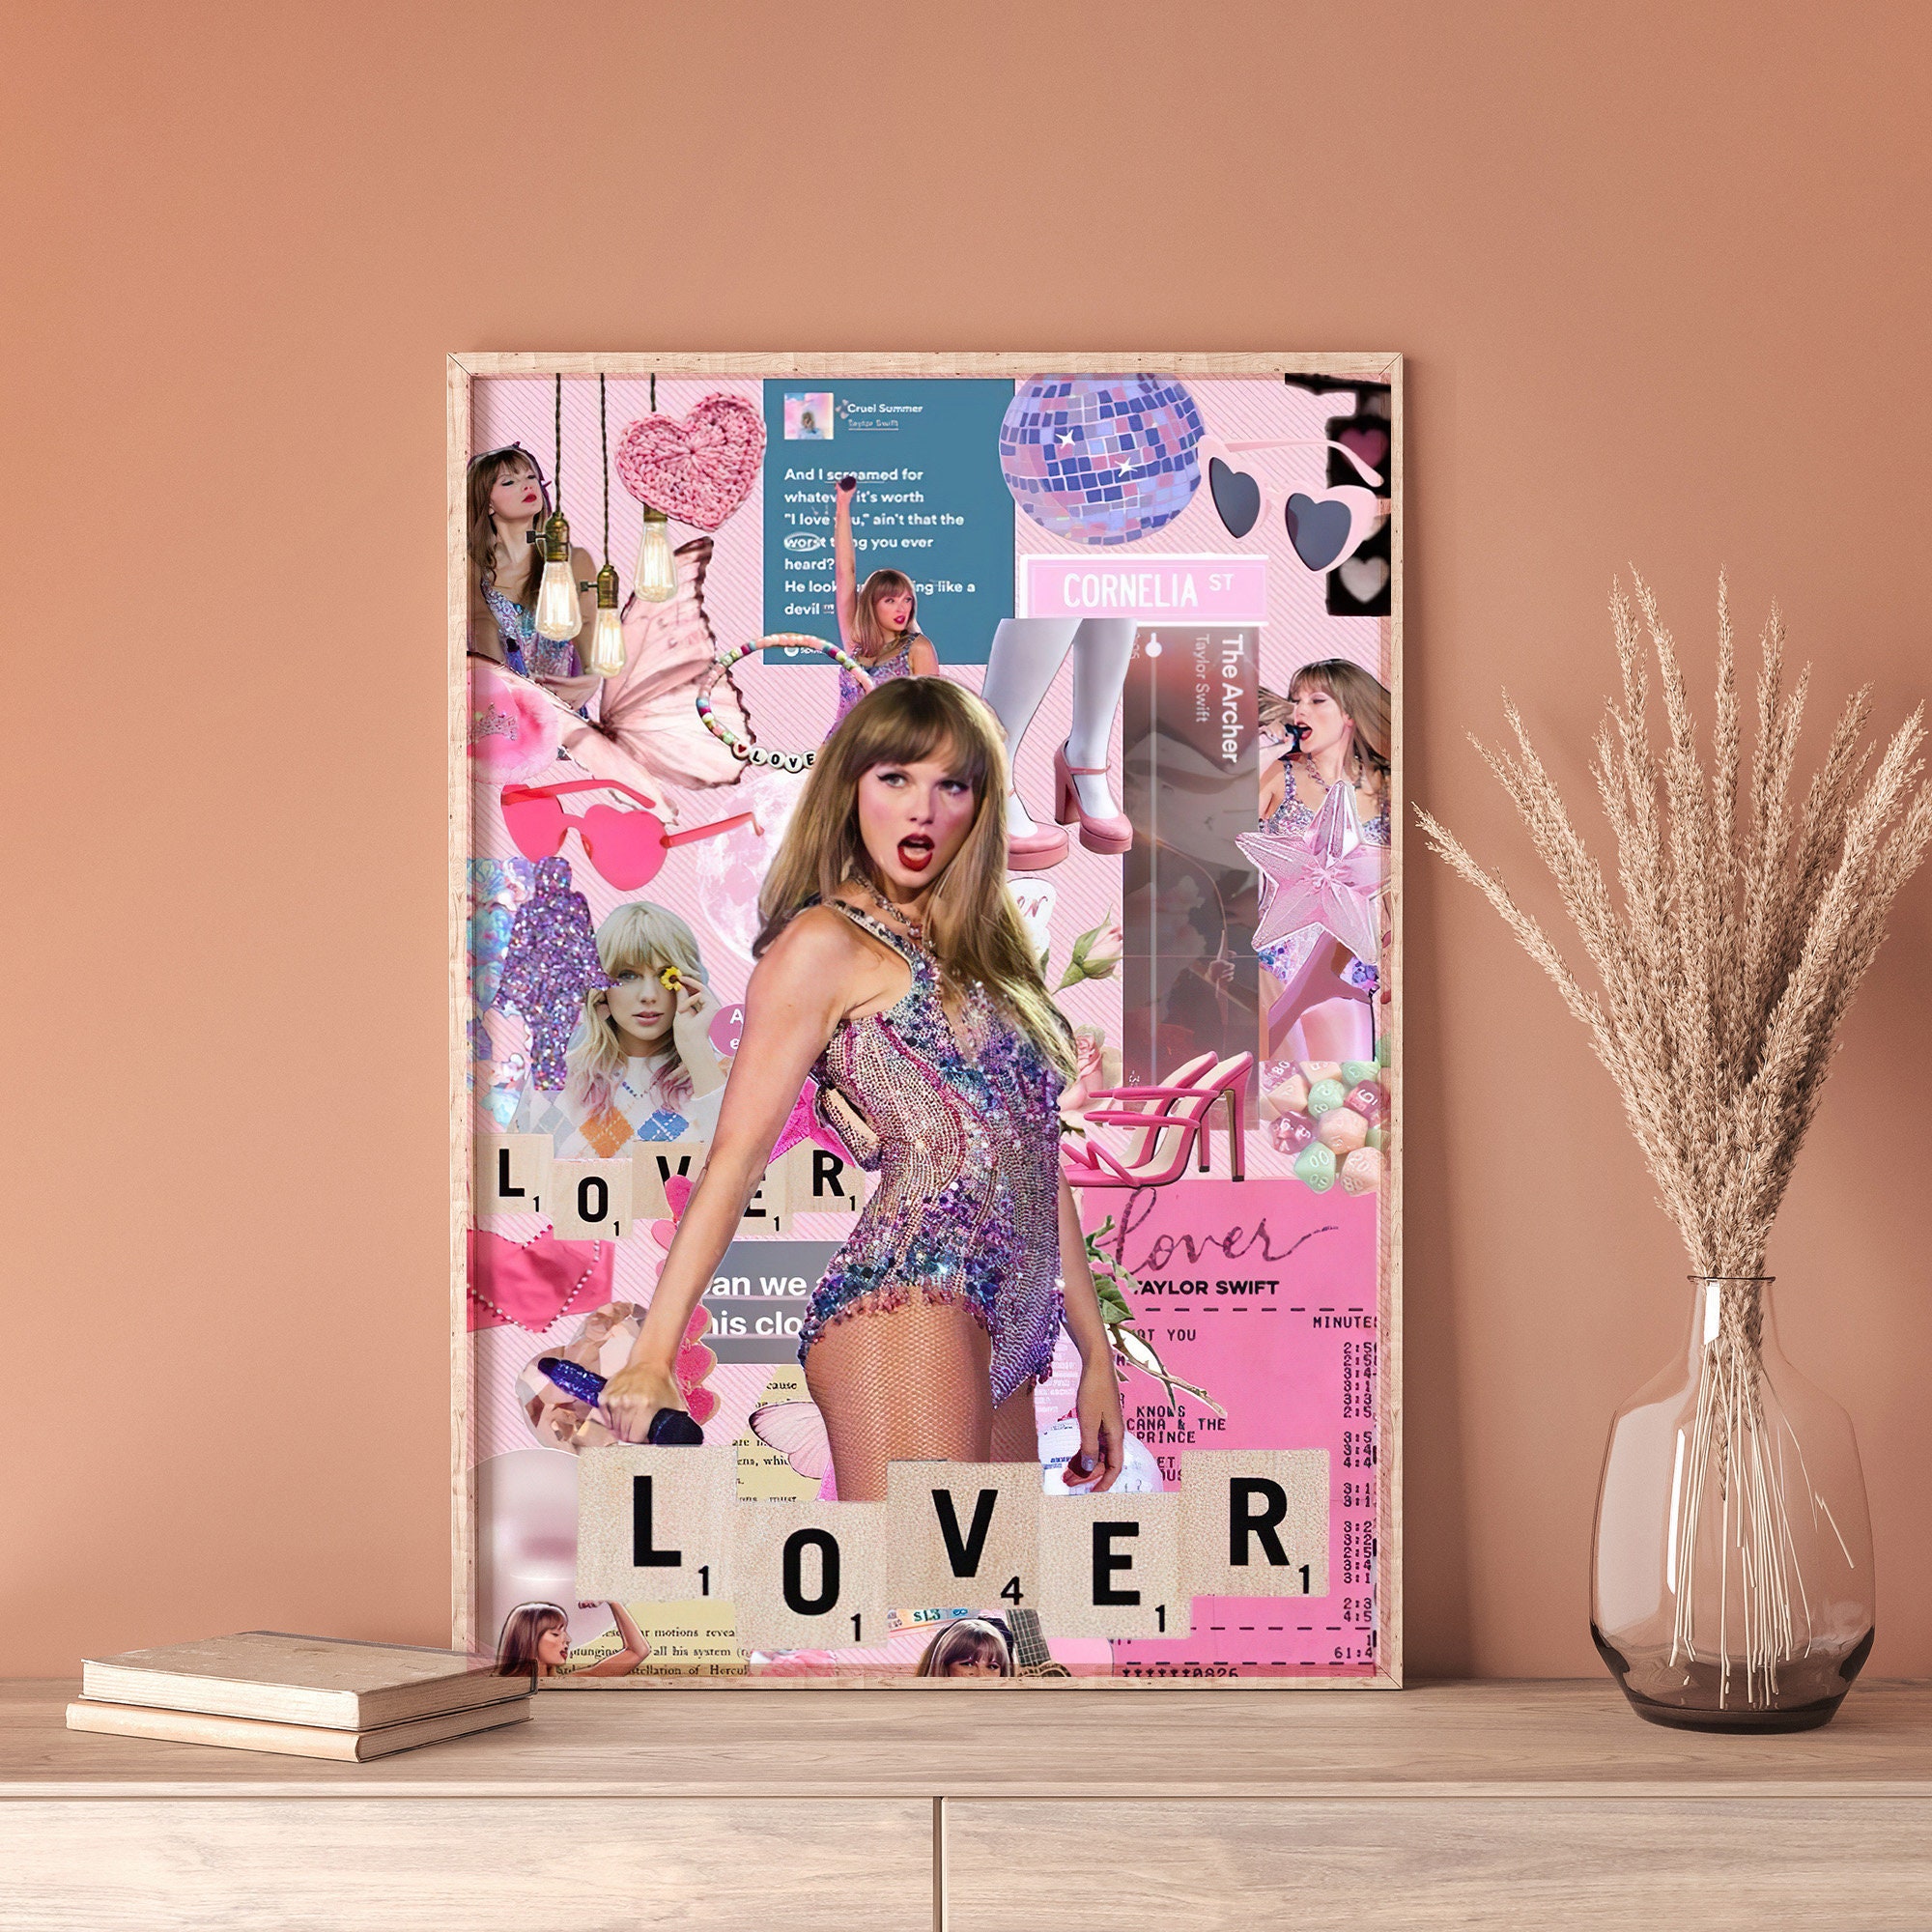 Taylor poster, Taylor Eras tour poster